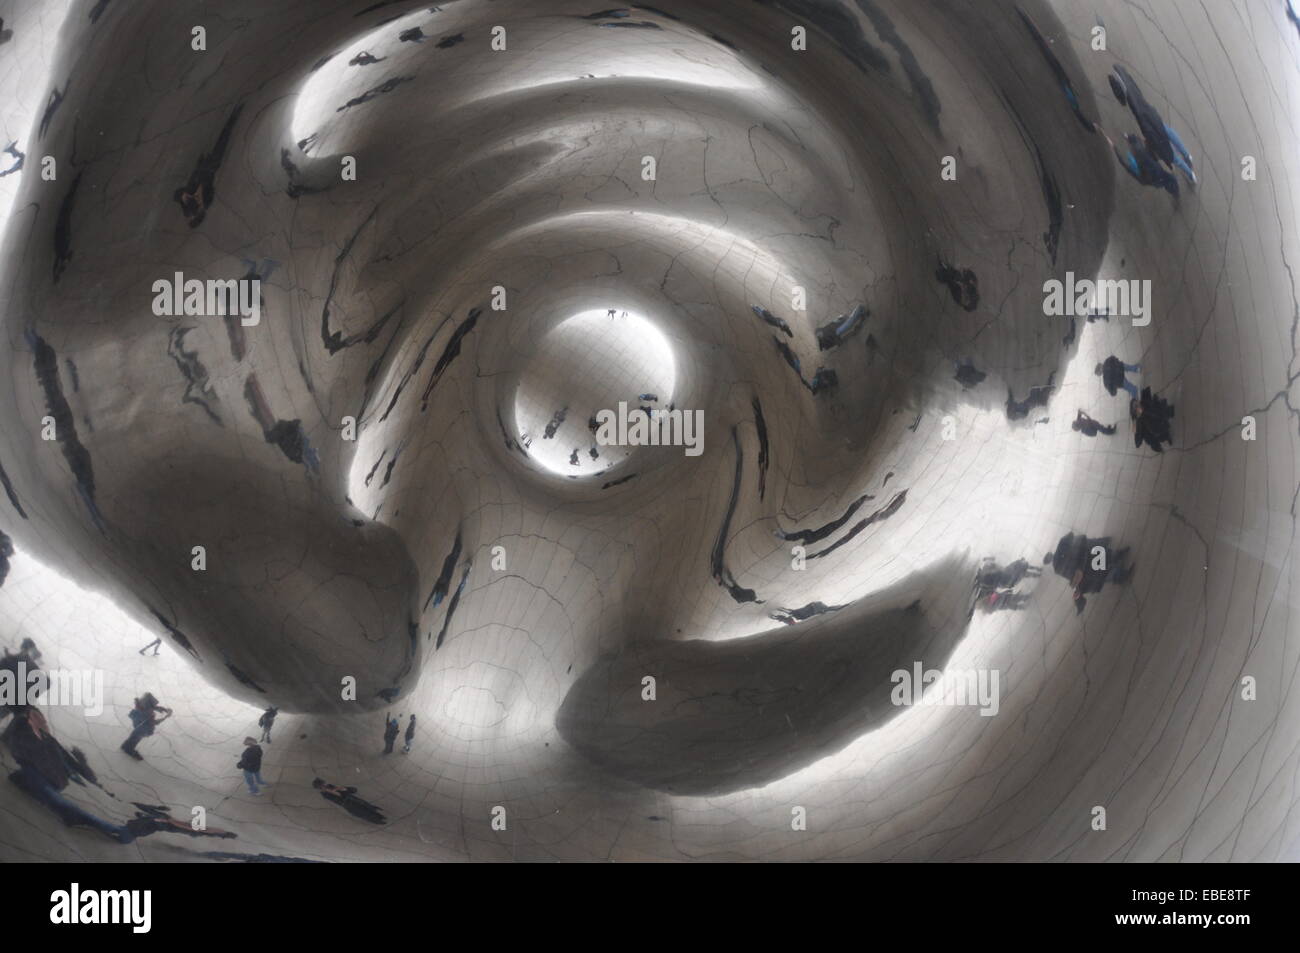 Reflejo distorsionado de visitantes de pie debajo de la parte inferior o "Omphalos' de la escultura Cloud Gate en el Millennium Park. Foto de stock